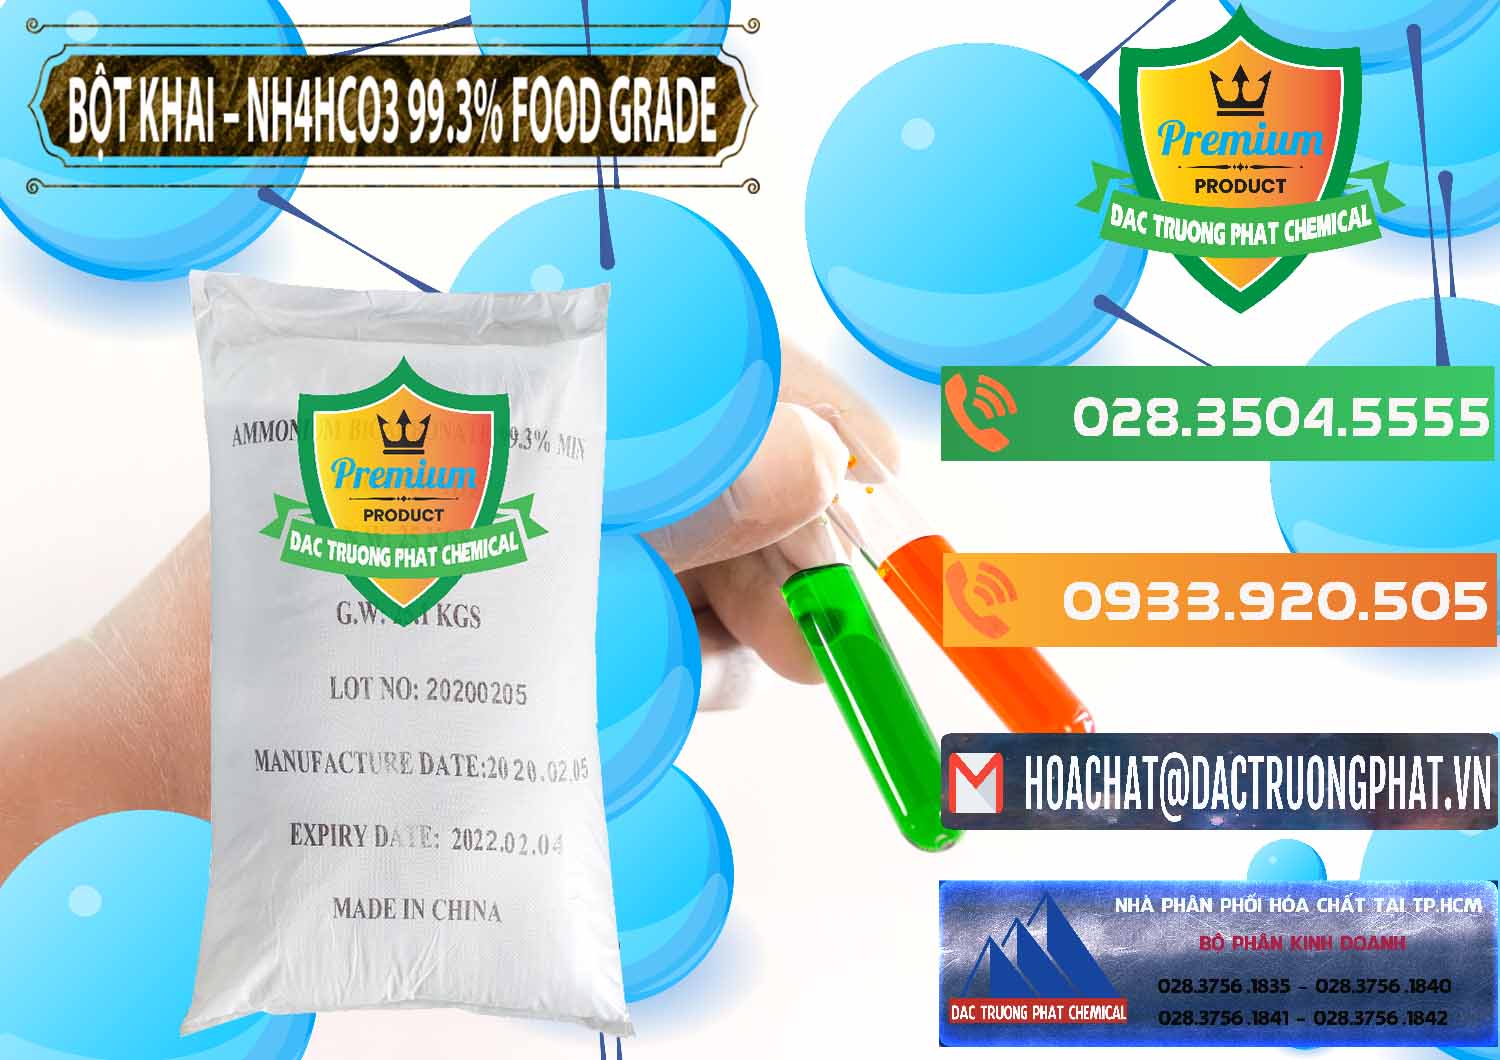 Cung cấp & bán Ammonium Bicarbonate – Bột Khai NH4HCO3 Food Grade Trung Quốc China - 0019 - Cung cấp _ bán hóa chất tại TP.HCM - hoachatxulynuoc.com.vn